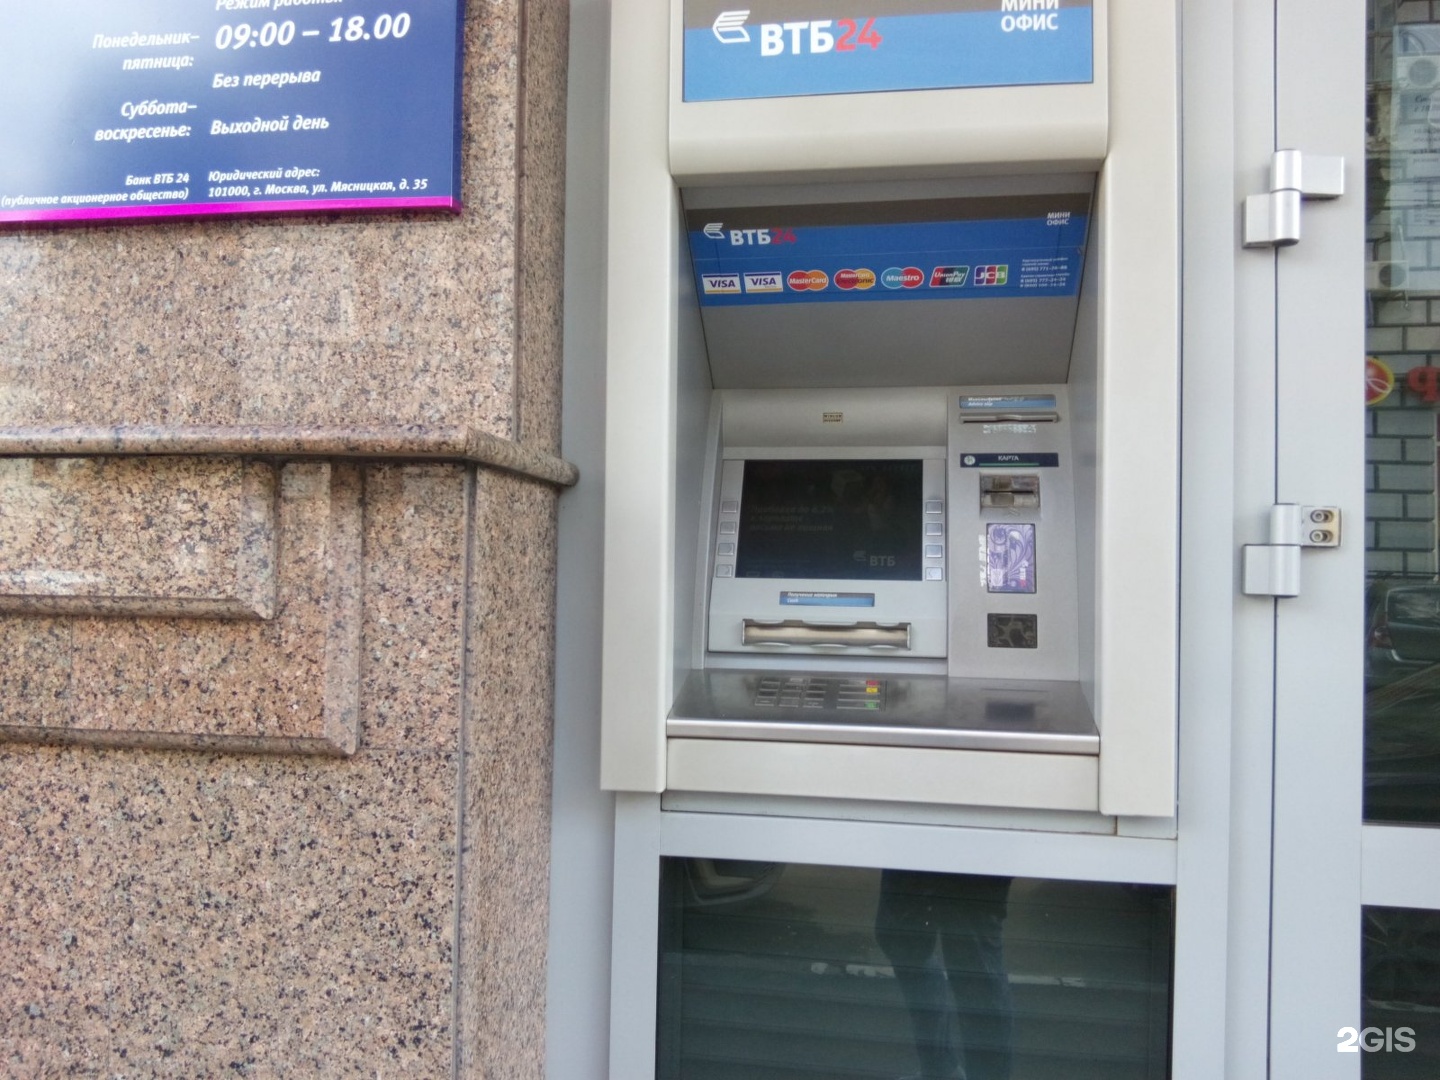 Точка банк банкоматы без комиссии